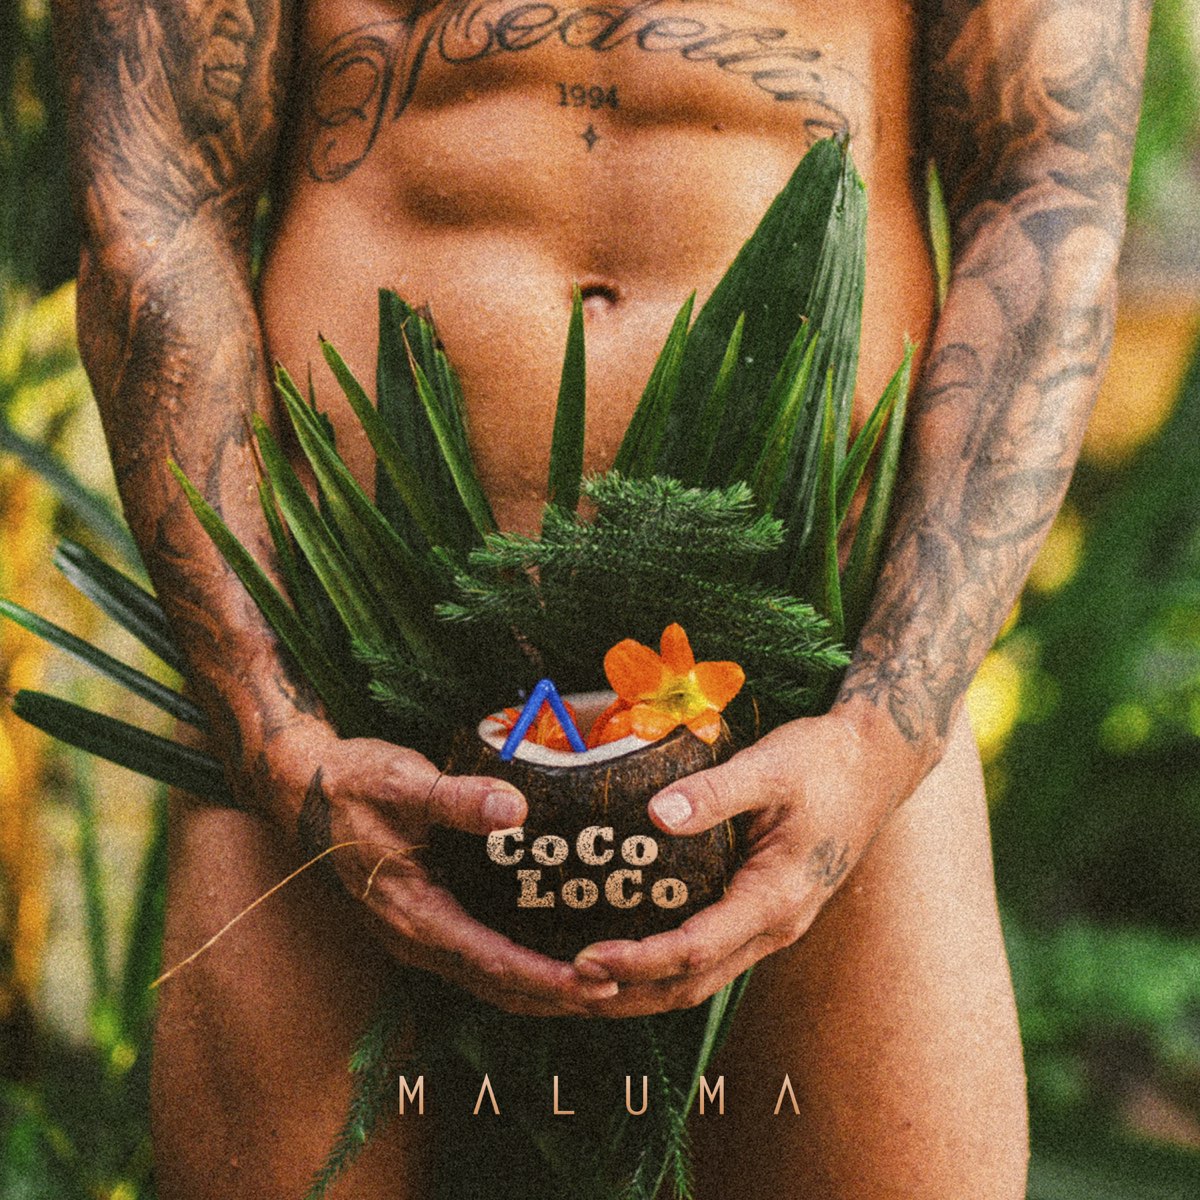 Maluma — COCO LOCO cover artwork